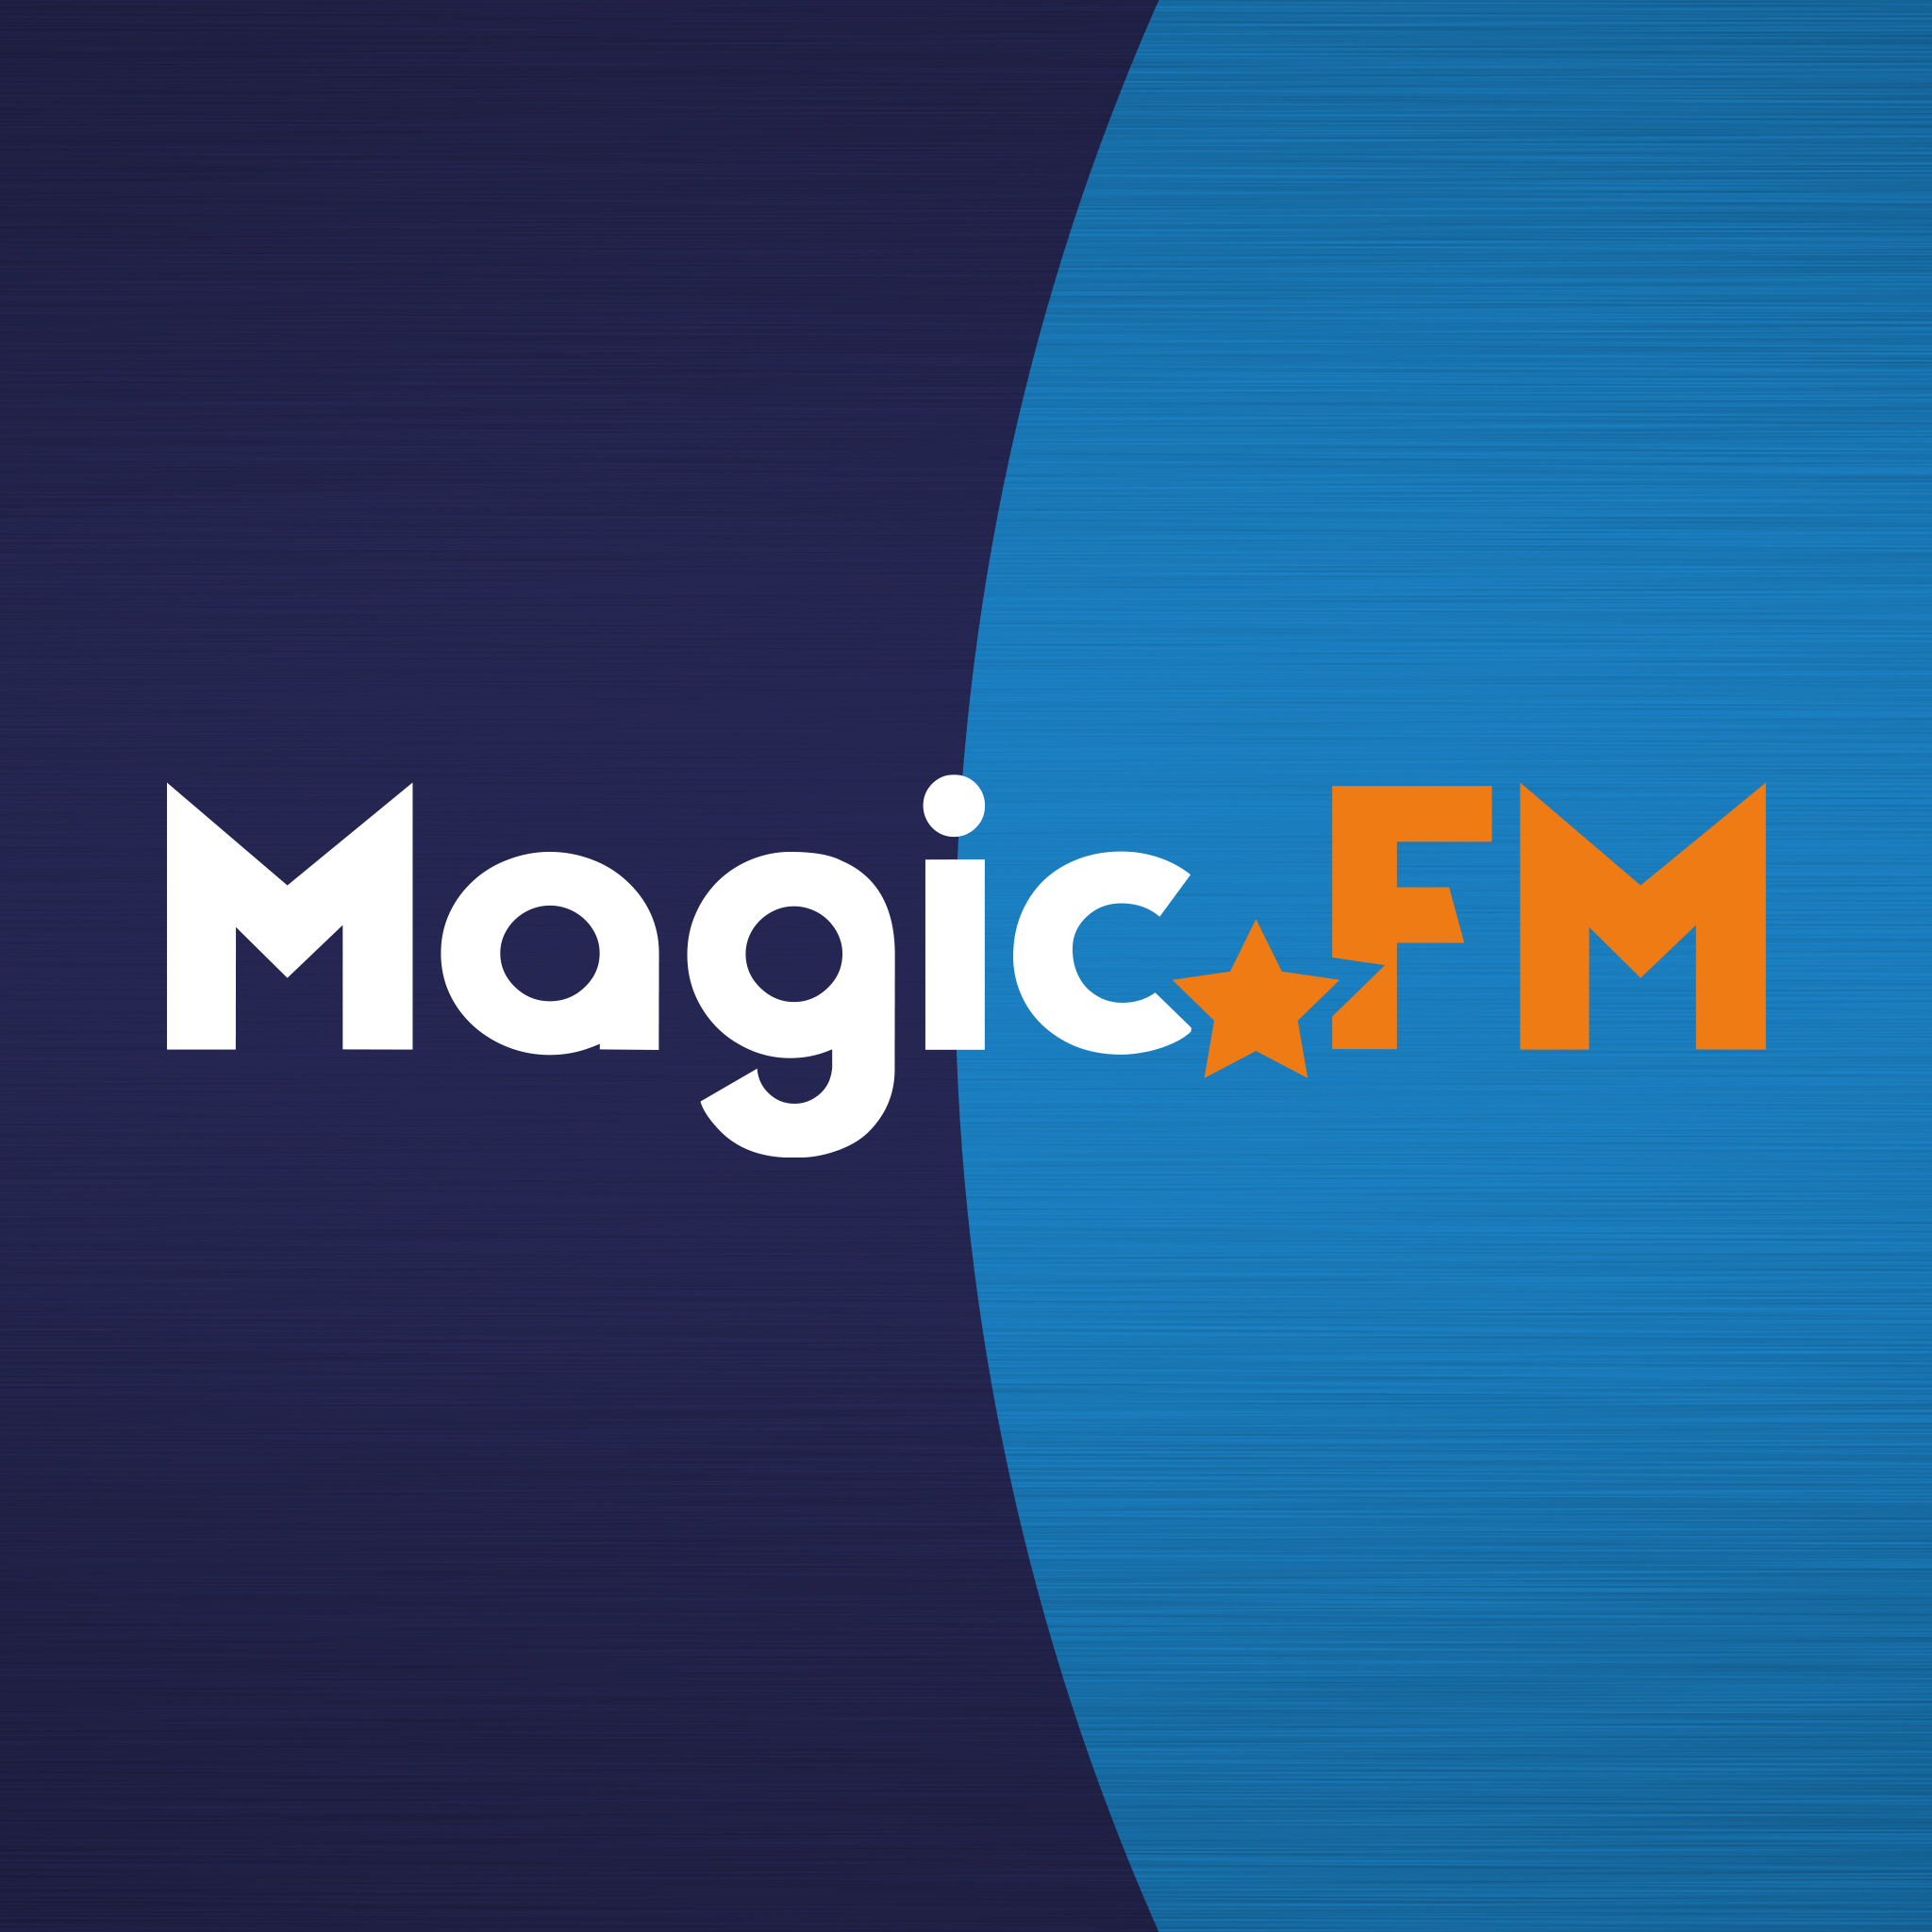 Magic FM | We are Magic!